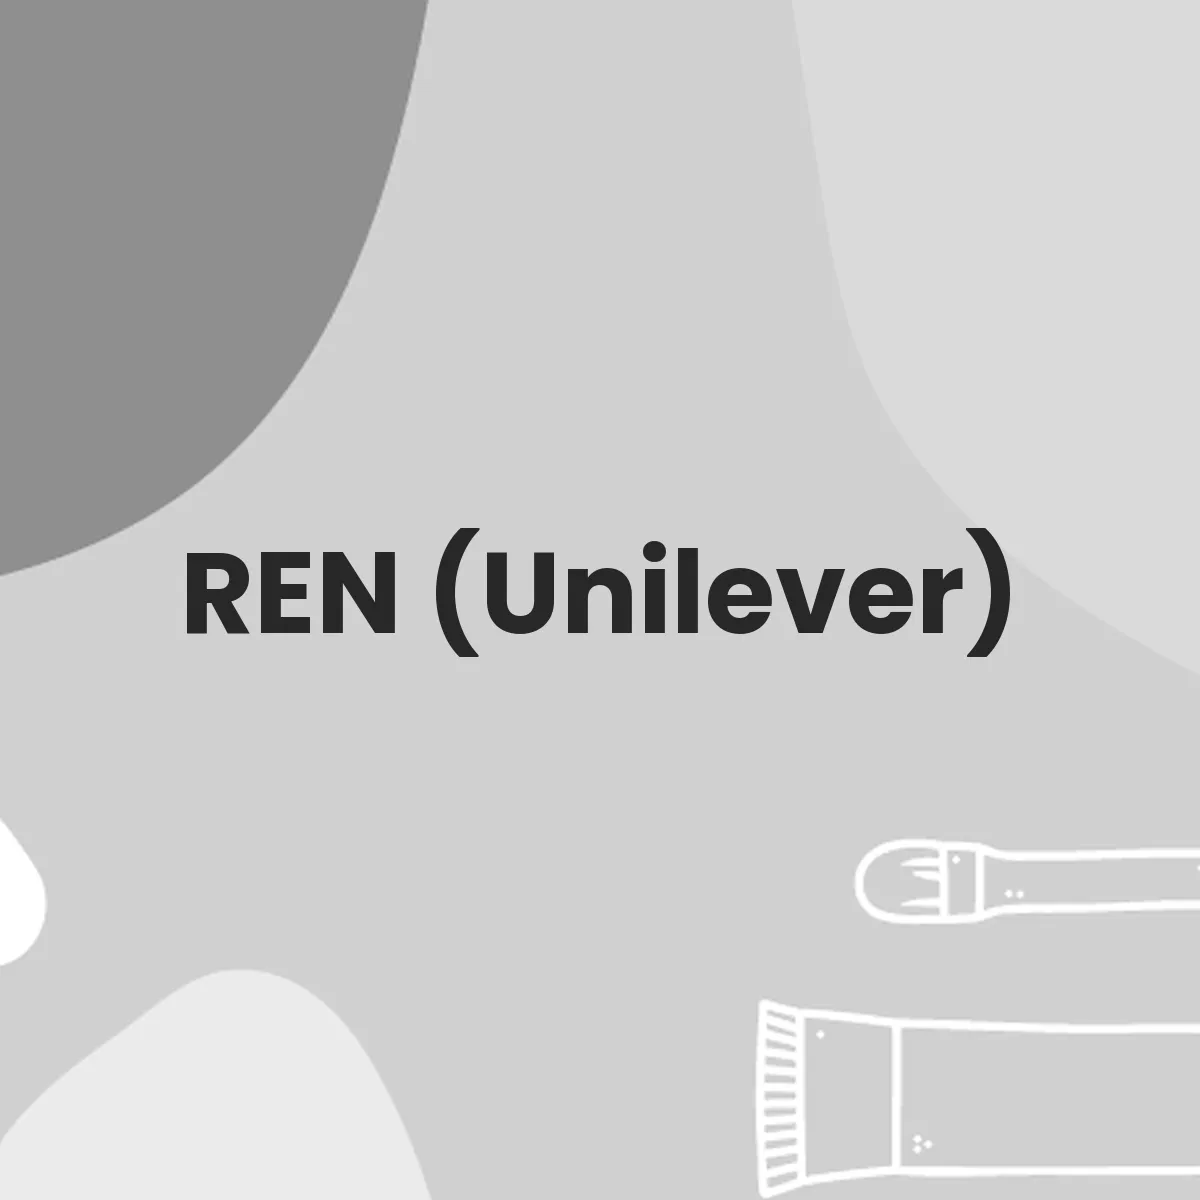 REN (Unilever) testa en animales?